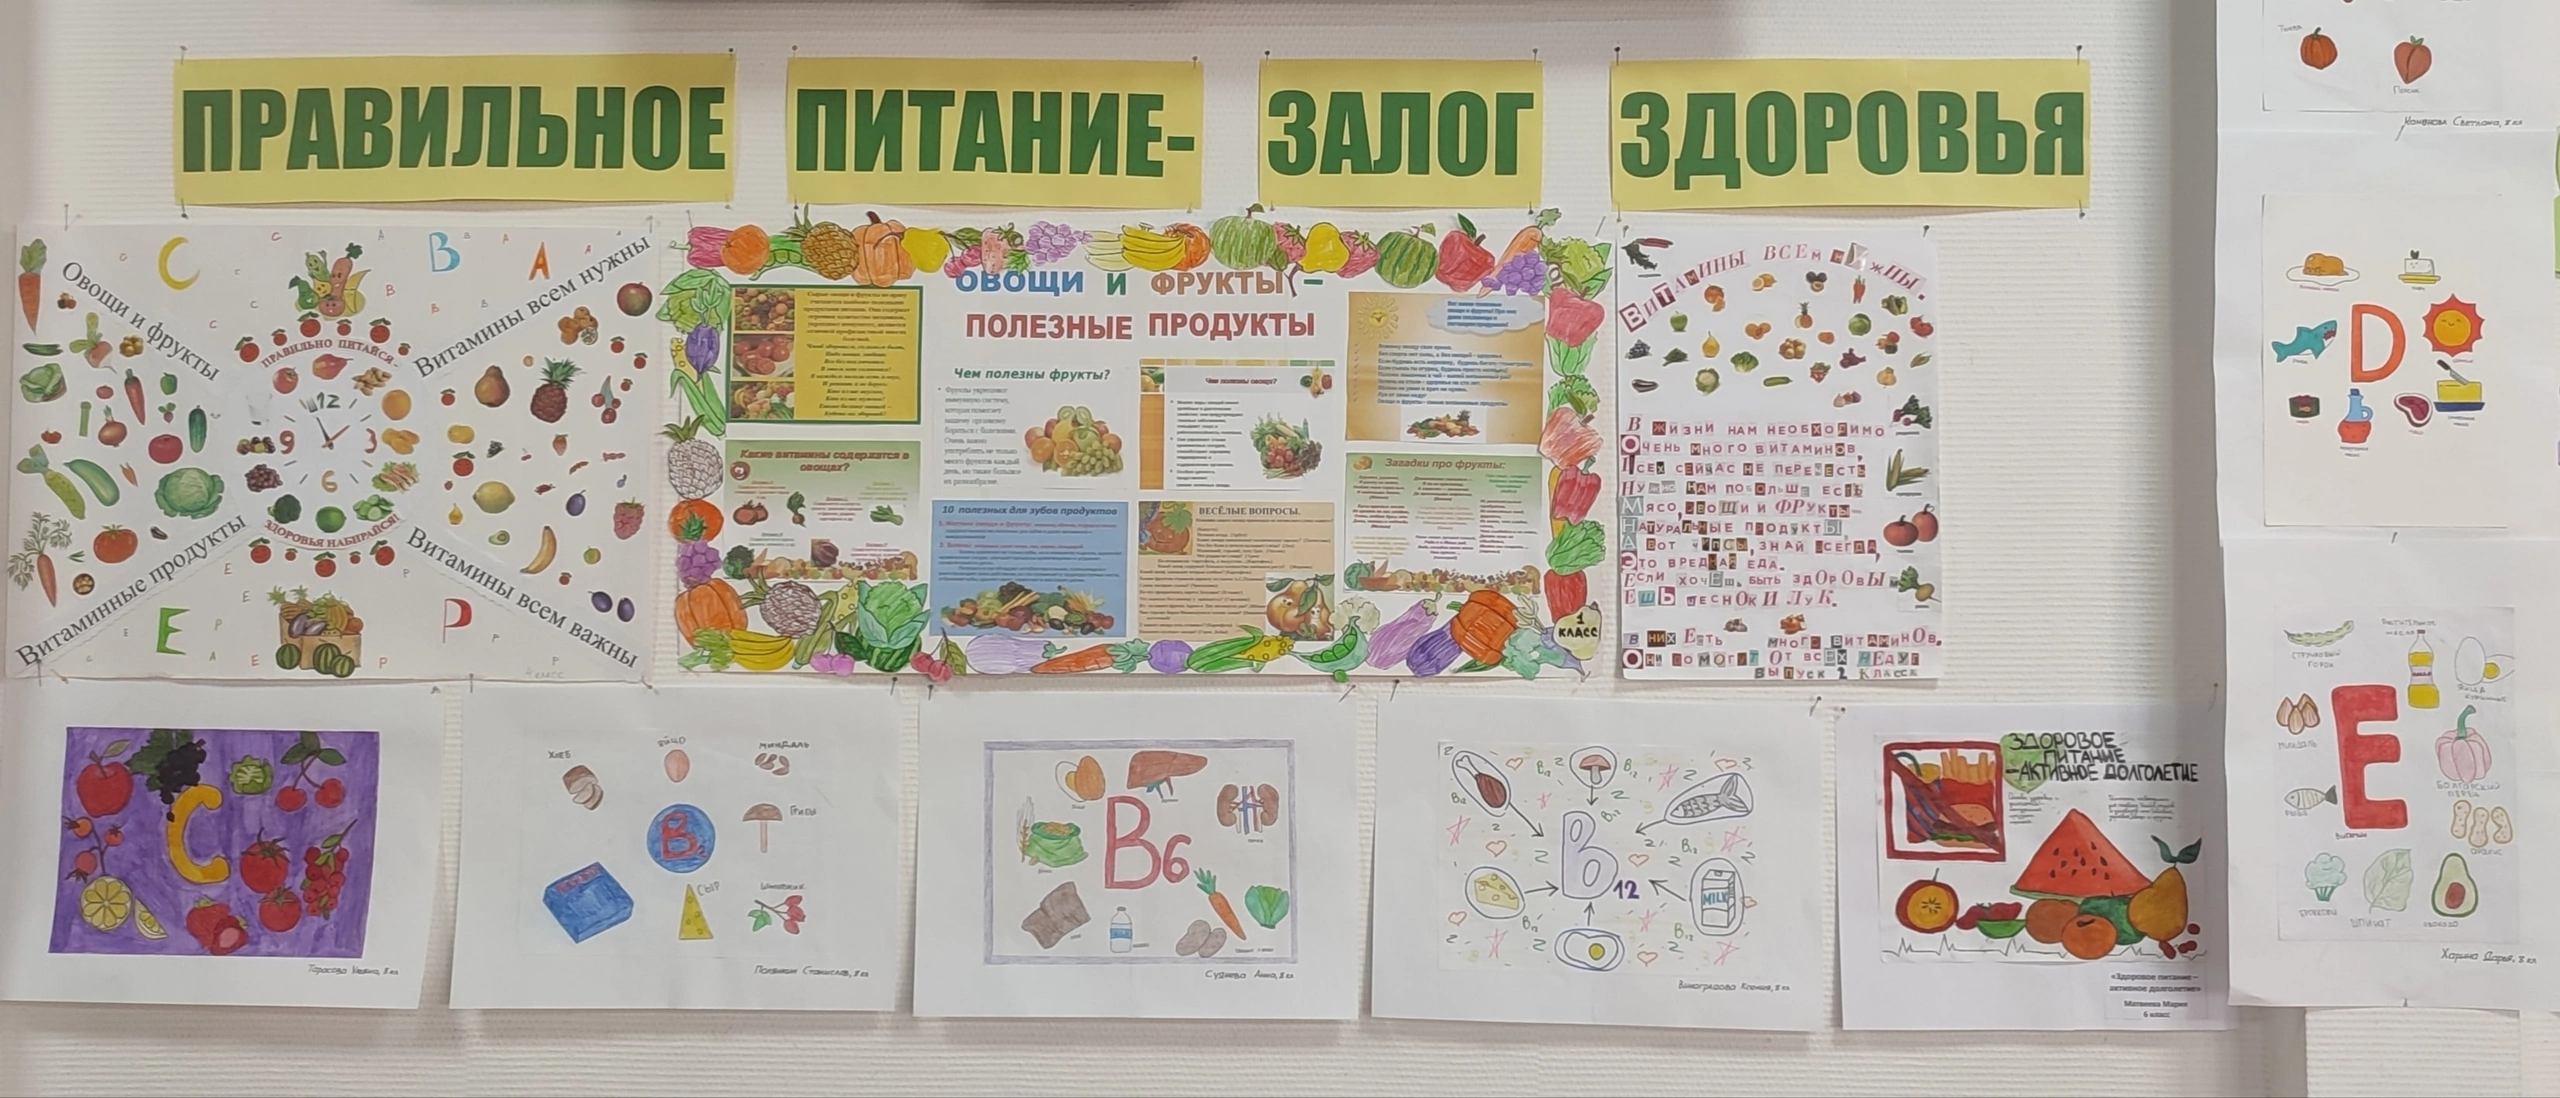 Учащиеся Узинской школы приняли участие в акции здорового питания..